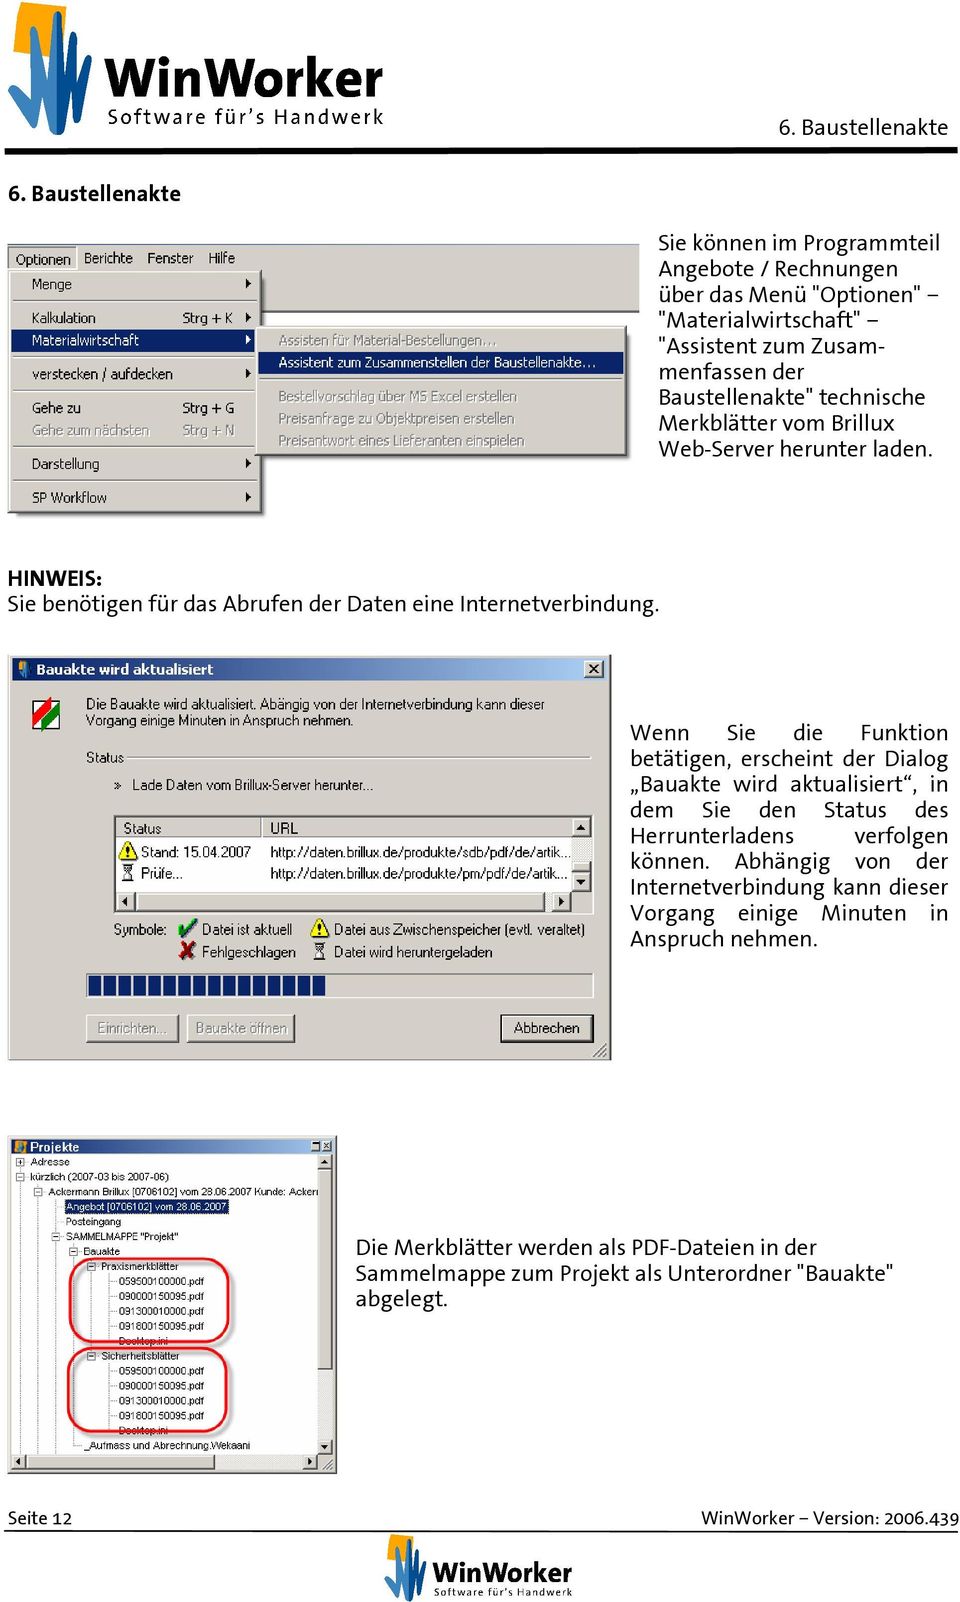 Merkblätter vom Brillux Web-Server herunter laden. HINWEIS: Sie benötigen für das Abrufen der Daten eine Internetverbindung.